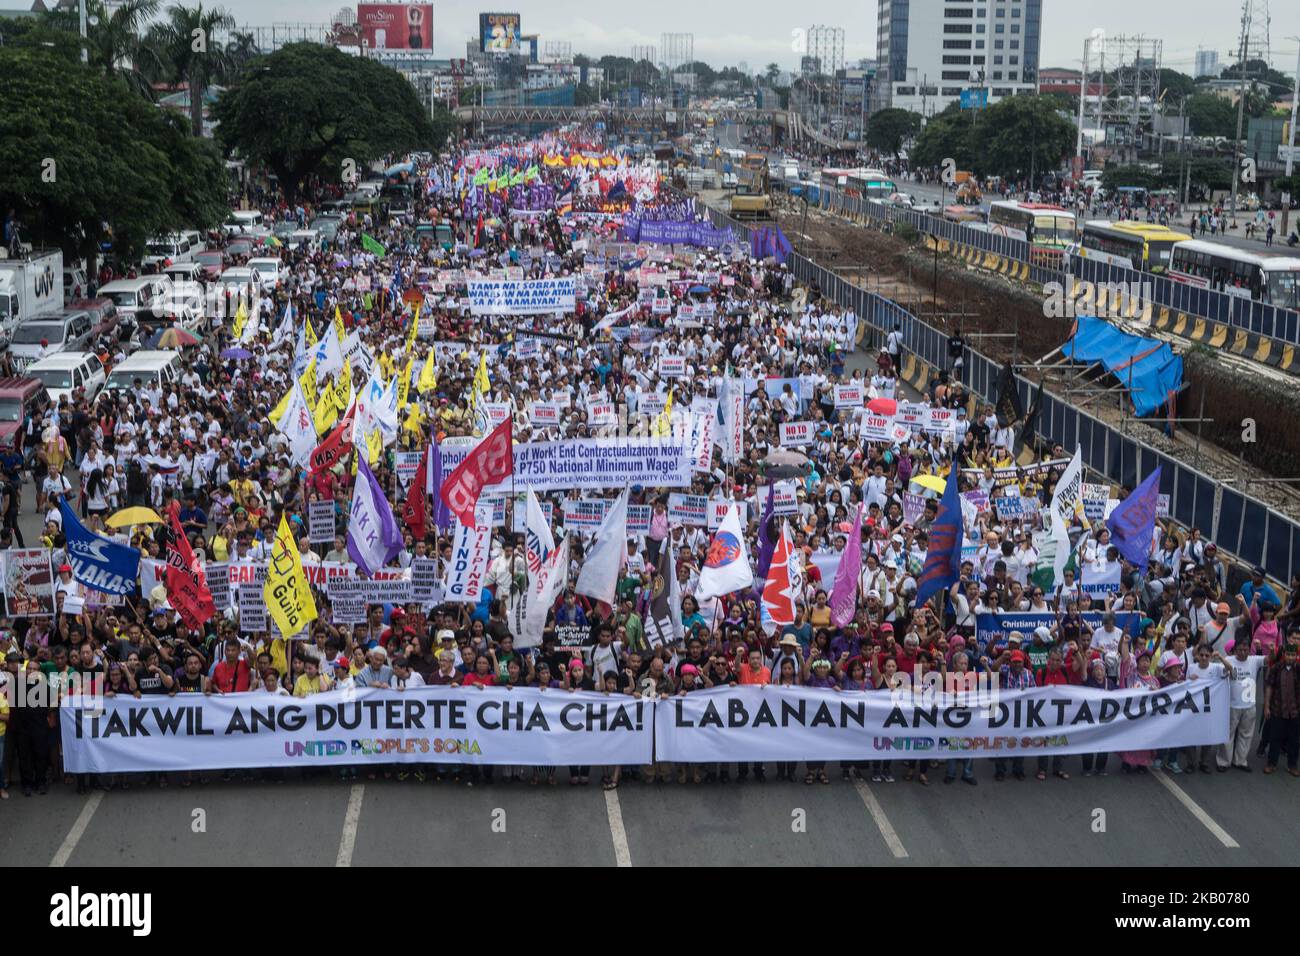 Tausende nehmen an der SONA der Vereinten Nationen in Batasan, Quezon City, Teil, während Präsident Rodrigo Duterte am 23. Juli 2018 seine dritte Rede zur Lage der Nation (SONA) hält. (Foto von Bernice Beltran/NurPhoto) Stockfoto